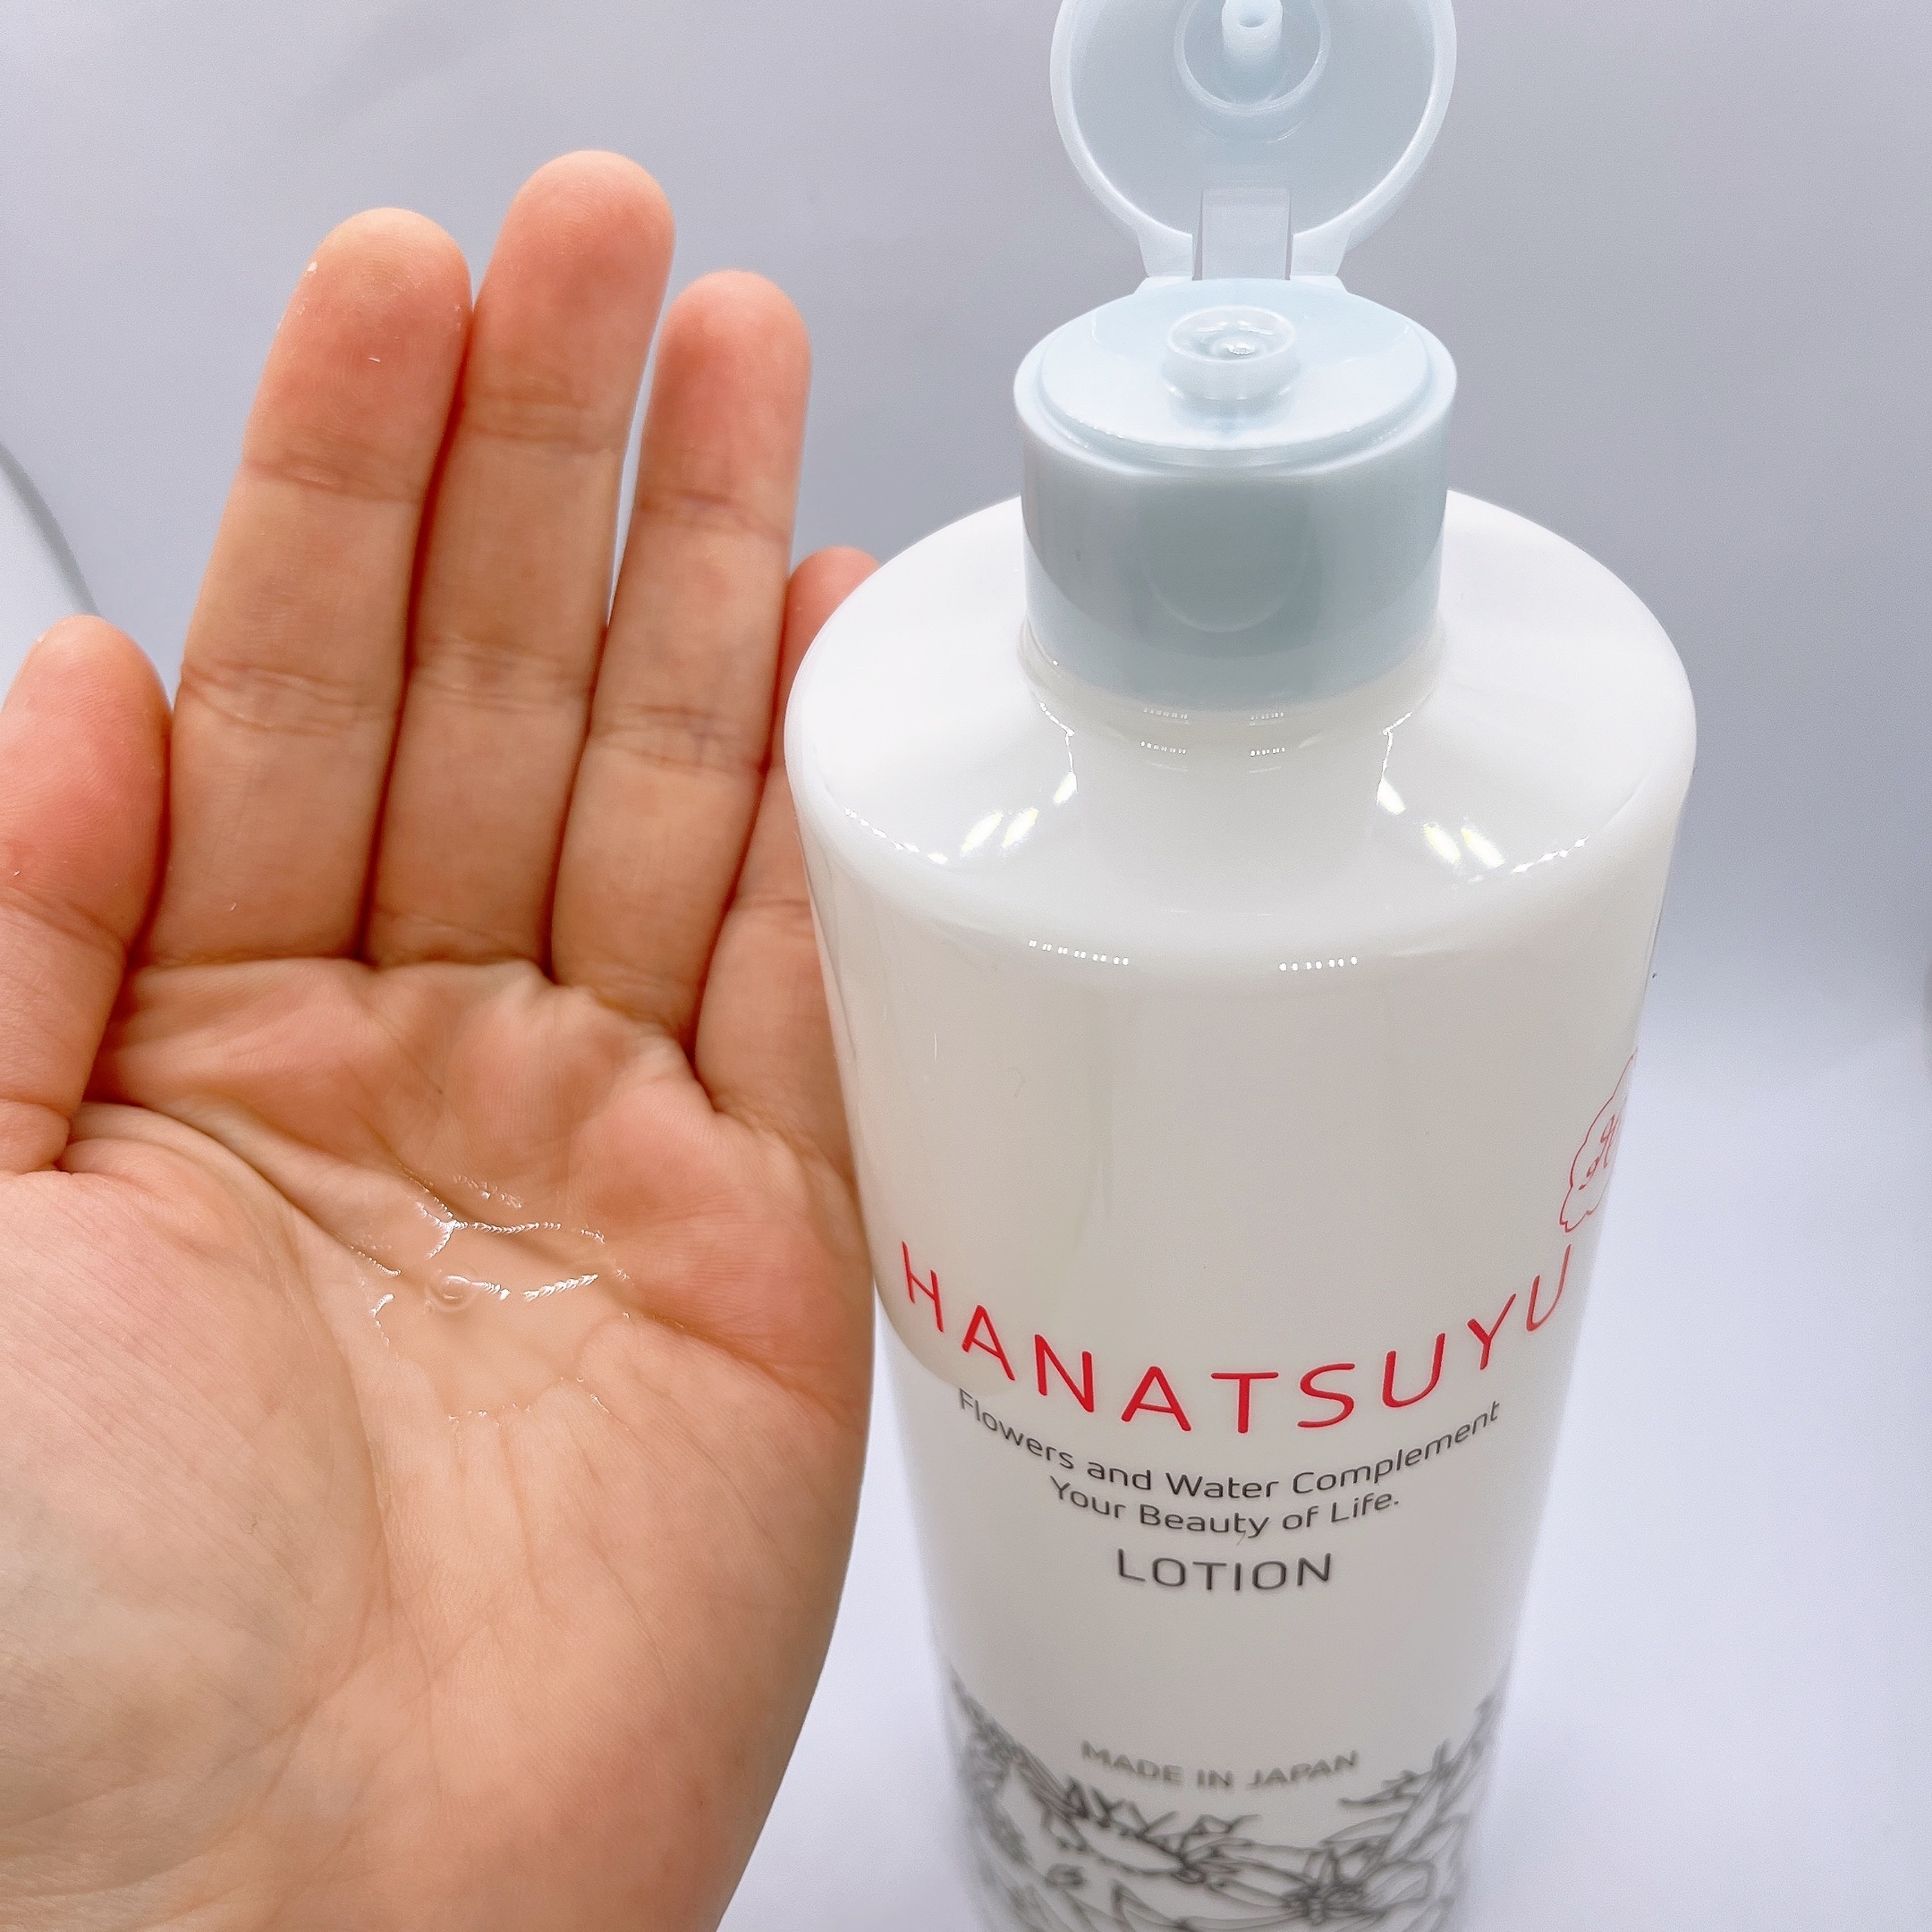 HANATSUYU(ハナツユ) 化粧水に関するまりたそさんの口コミ画像3